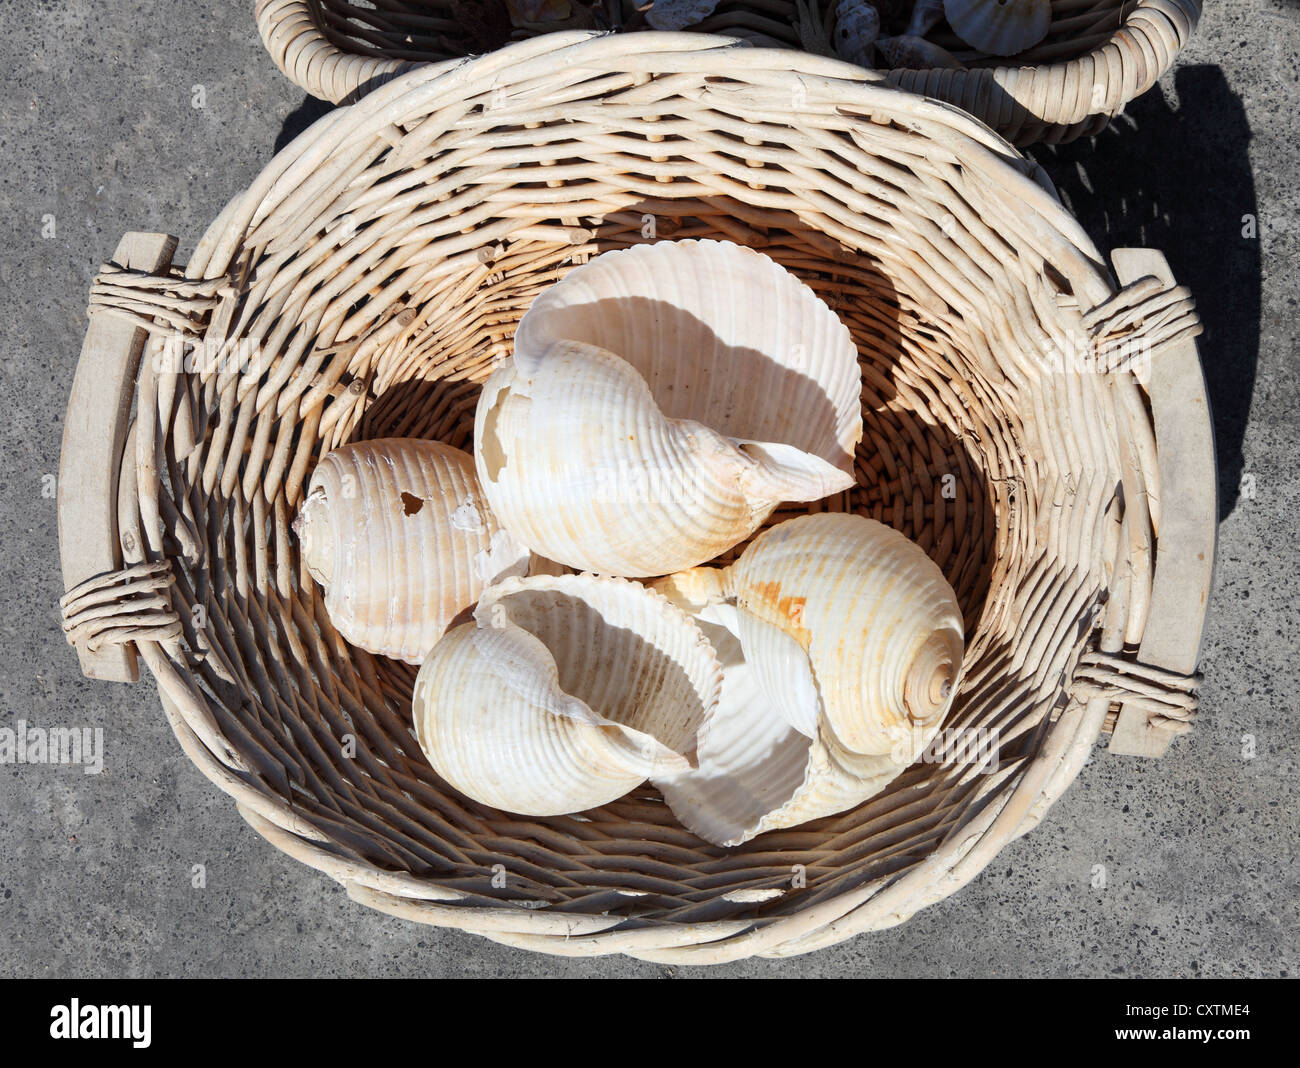 Panier en osier contenant des coquilles de mer Agios Nikolaos, Crète, Grèce Banque D'Images